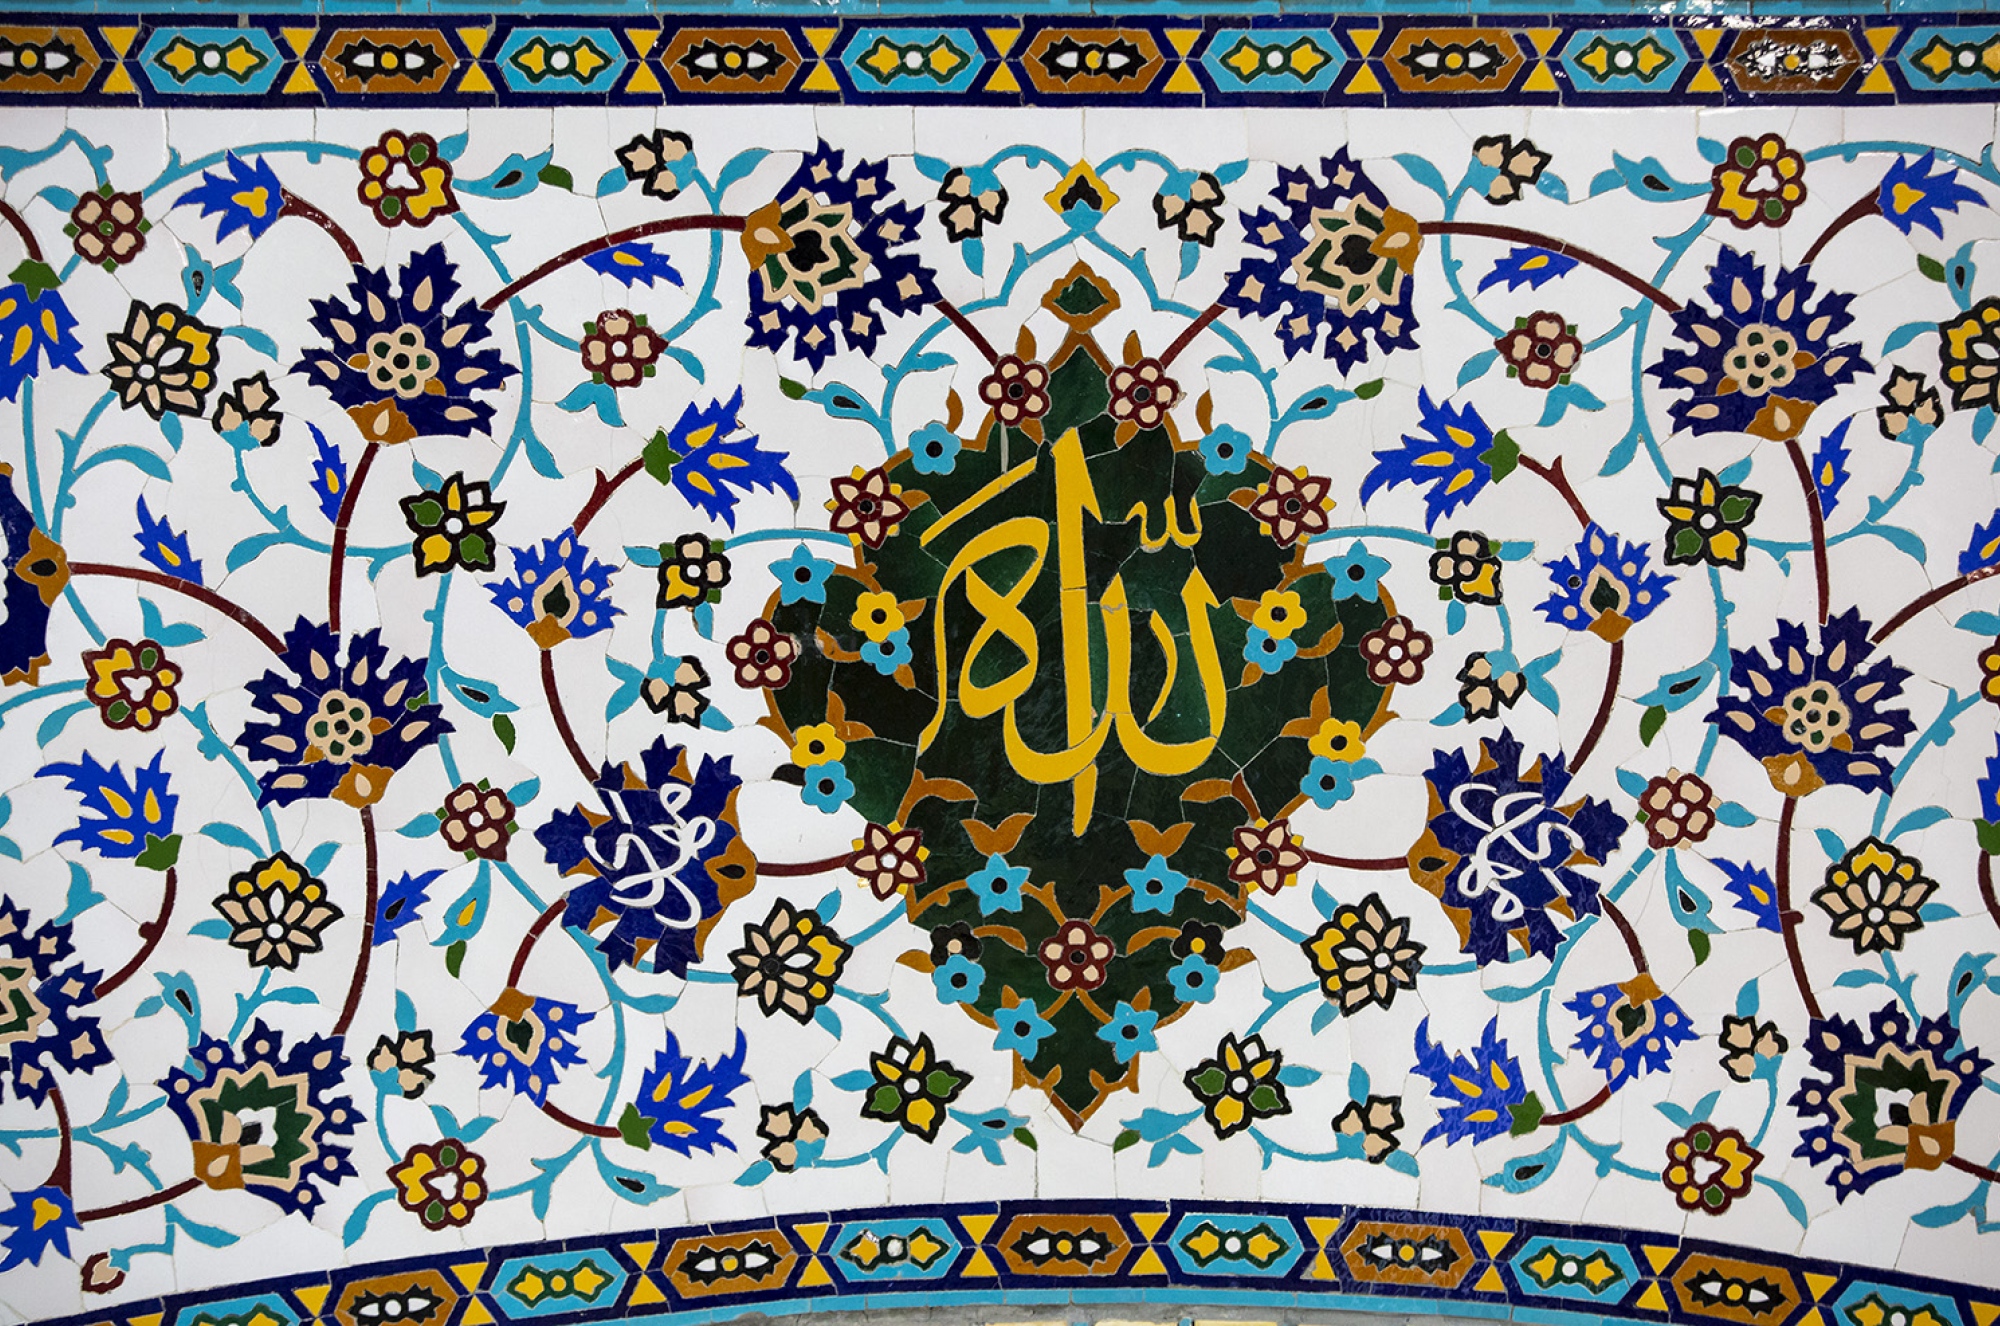 عکس با کیفیت : کاشی مزین به نام الله در رواق امام خمینی حرم مطهر رضوی